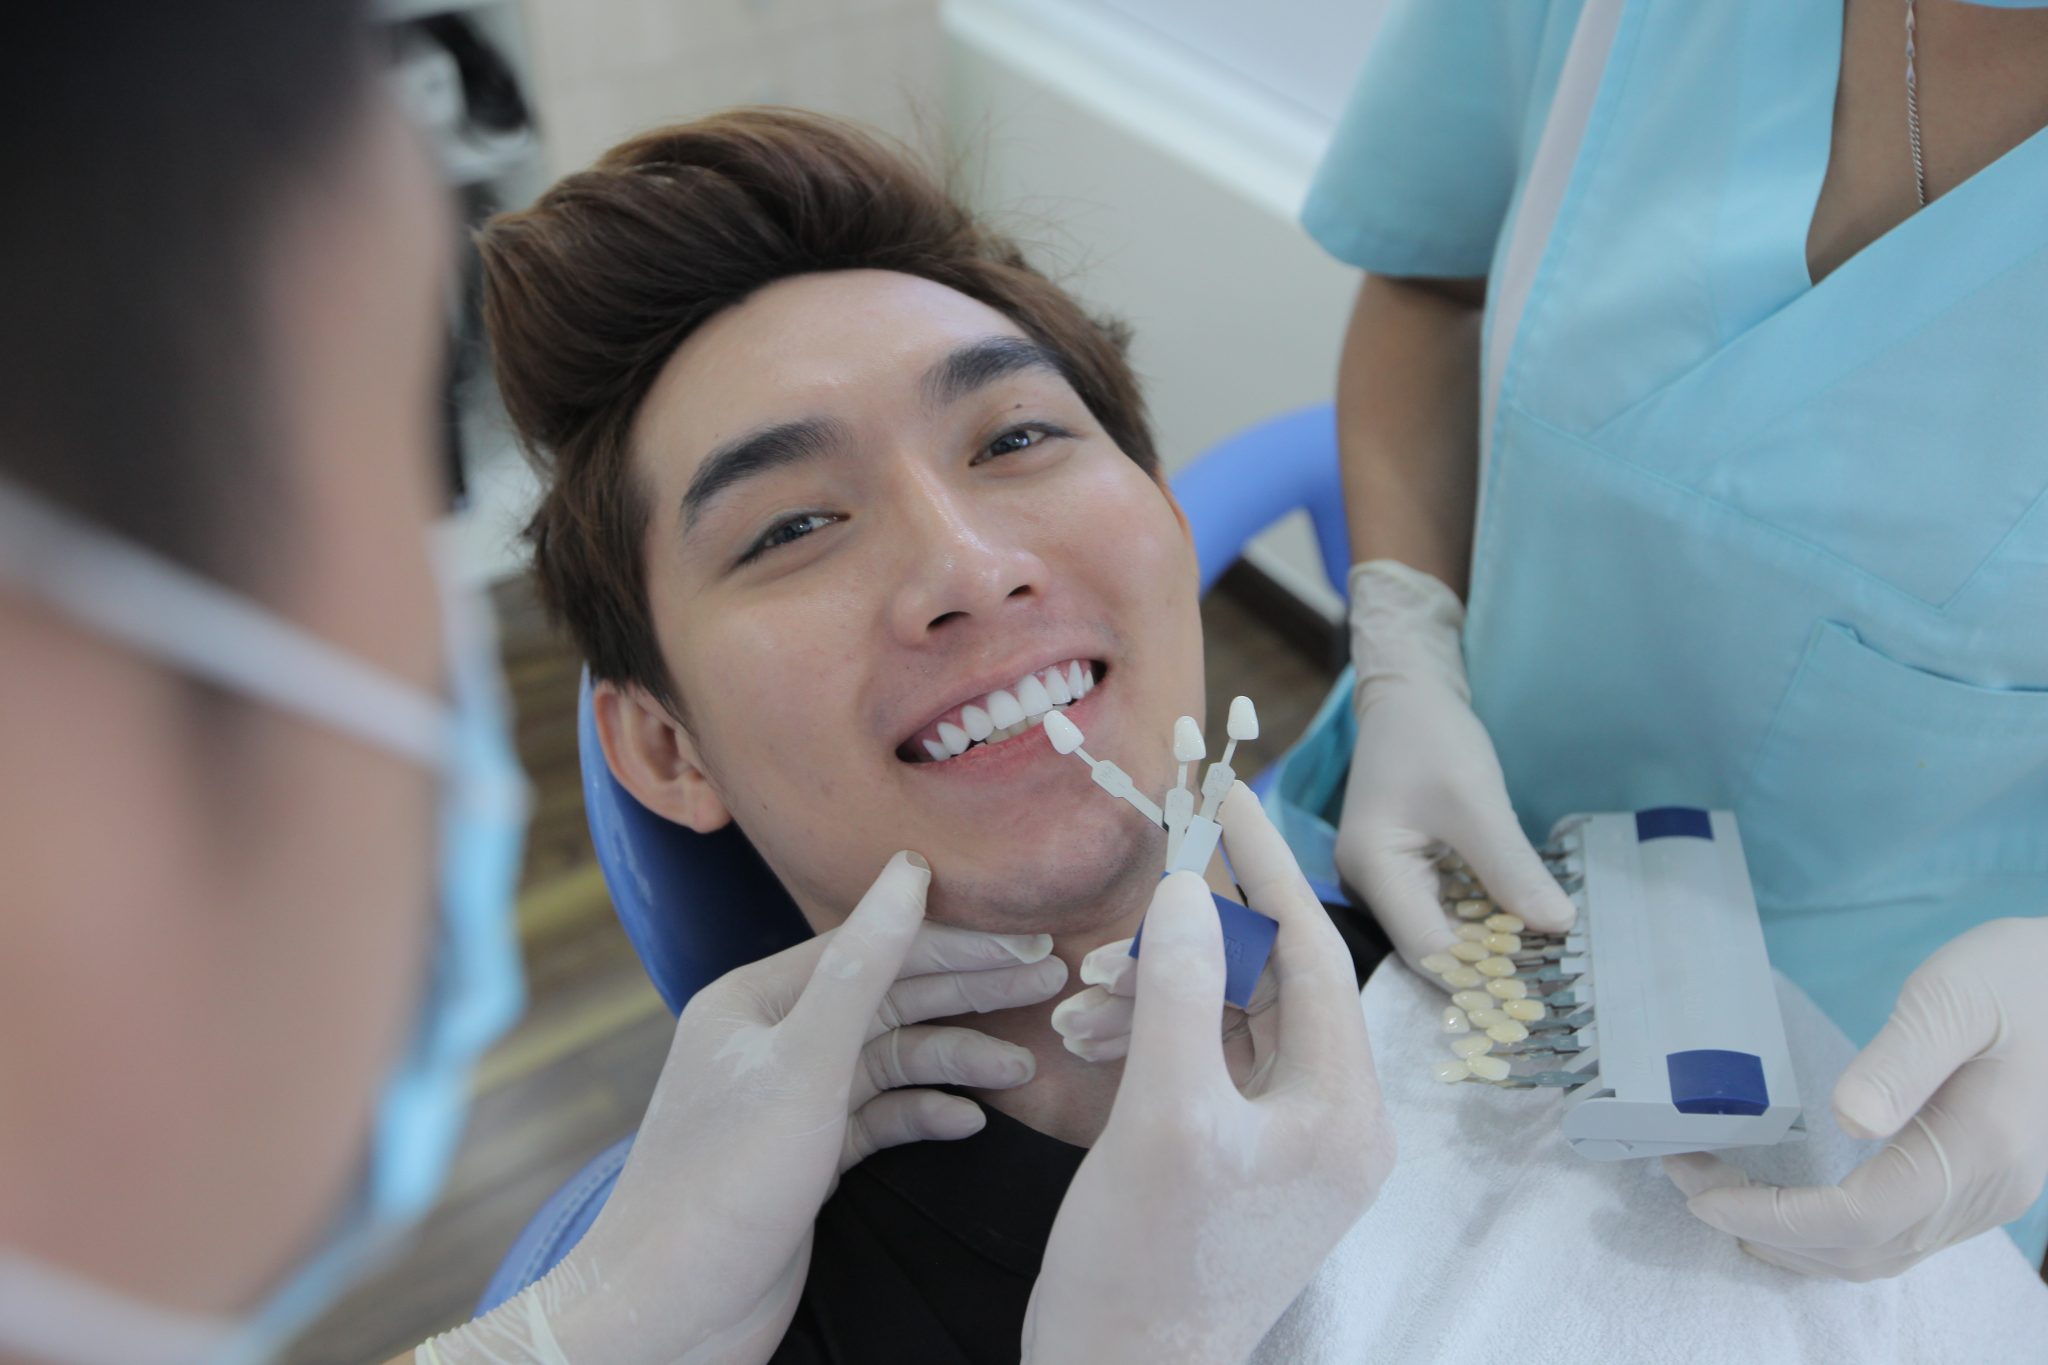 Nha khoa Kim ứng dụng đầy đủ các nhu cầu dịch vụ nha khoa điều trị, phục hình và thẩm mỹ răng hàm mặt